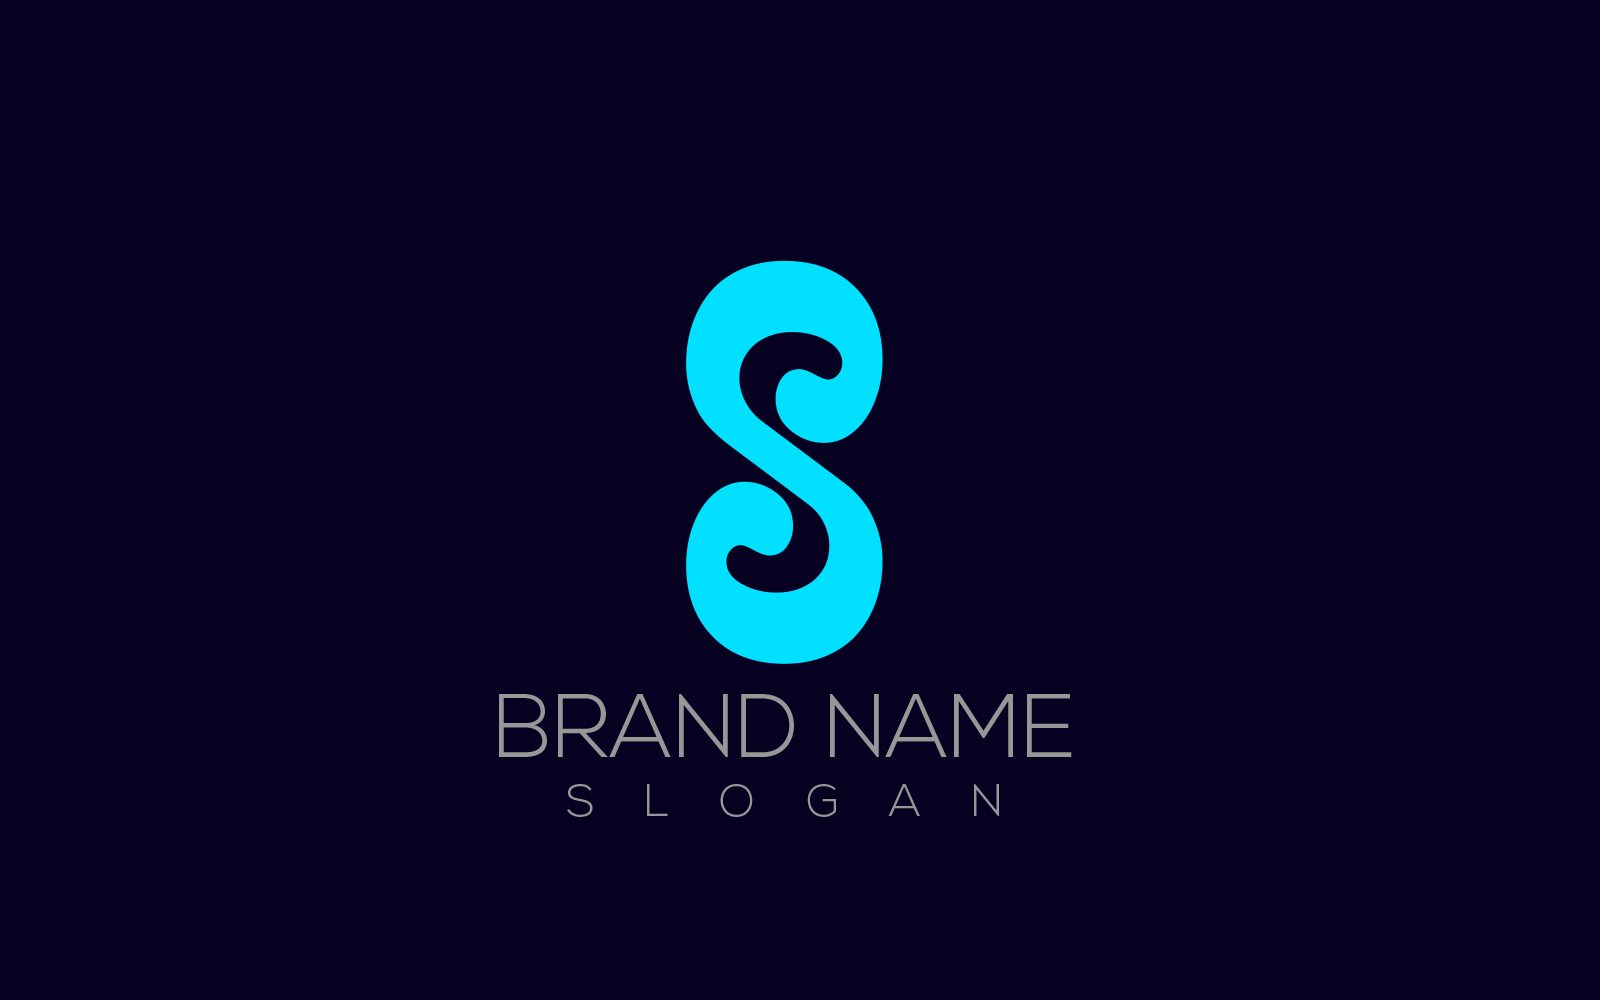 s-logo-creative-letter-s-logo-design